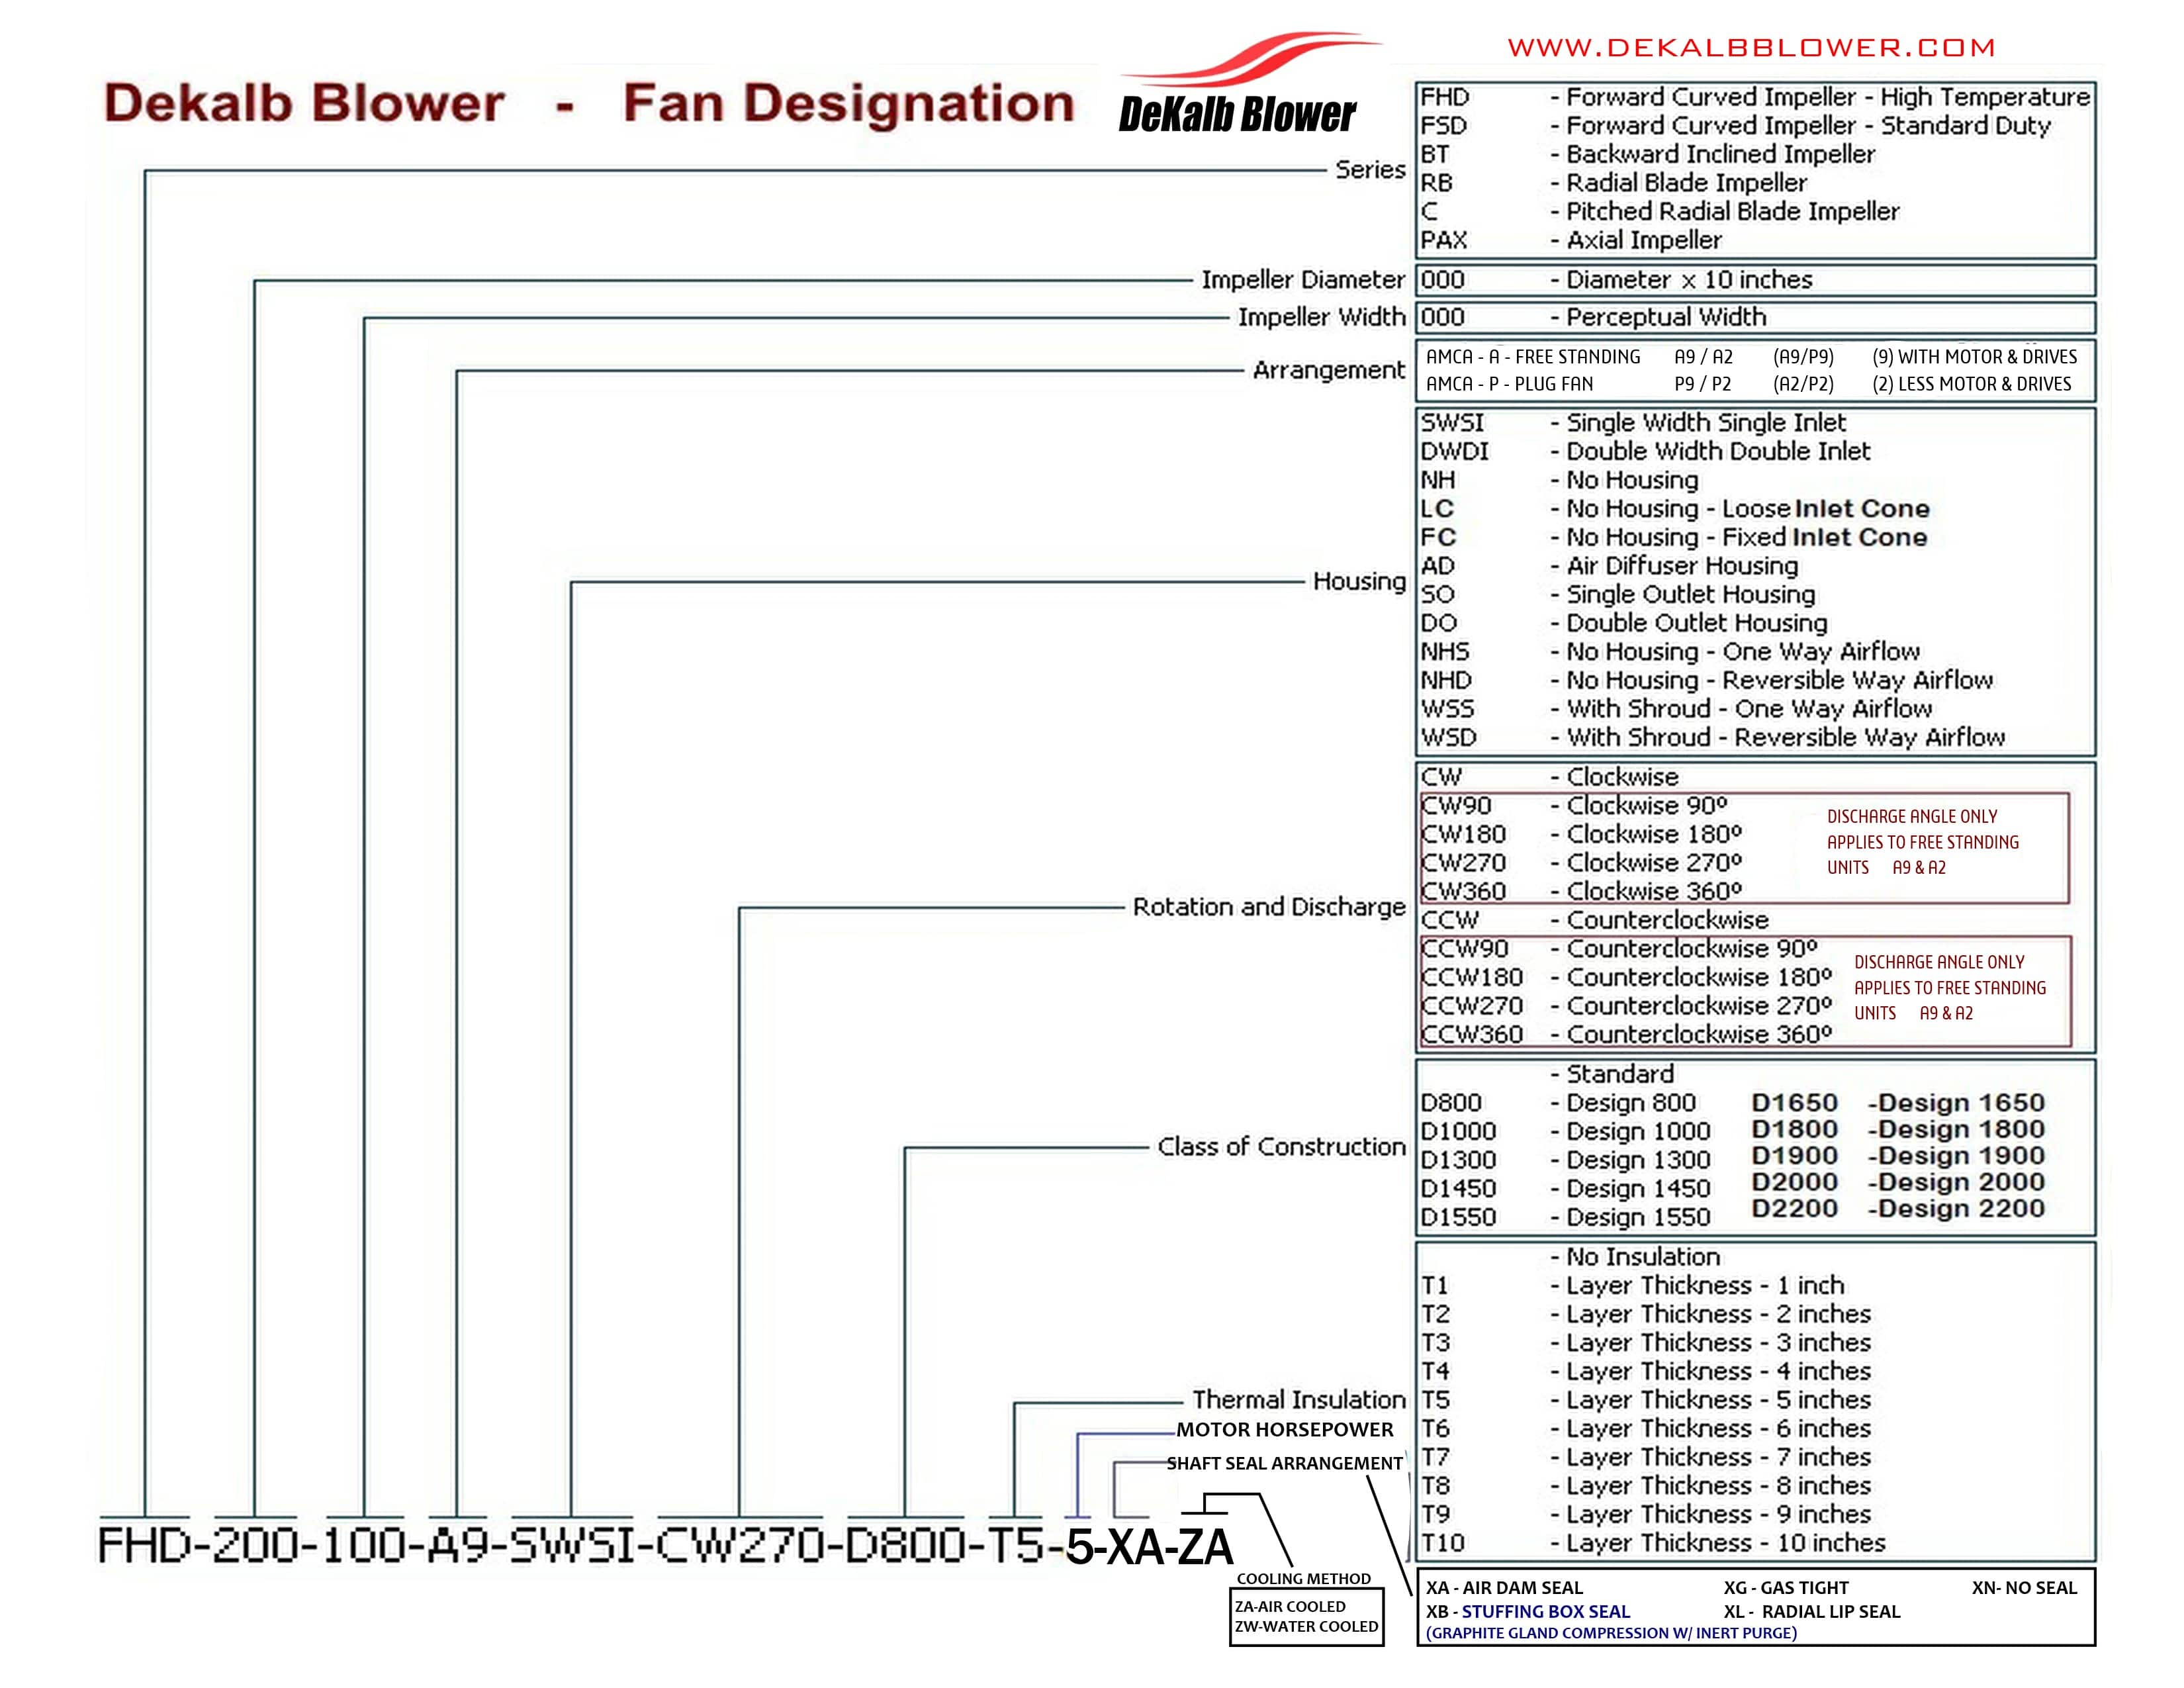 Fan Designation Sheet